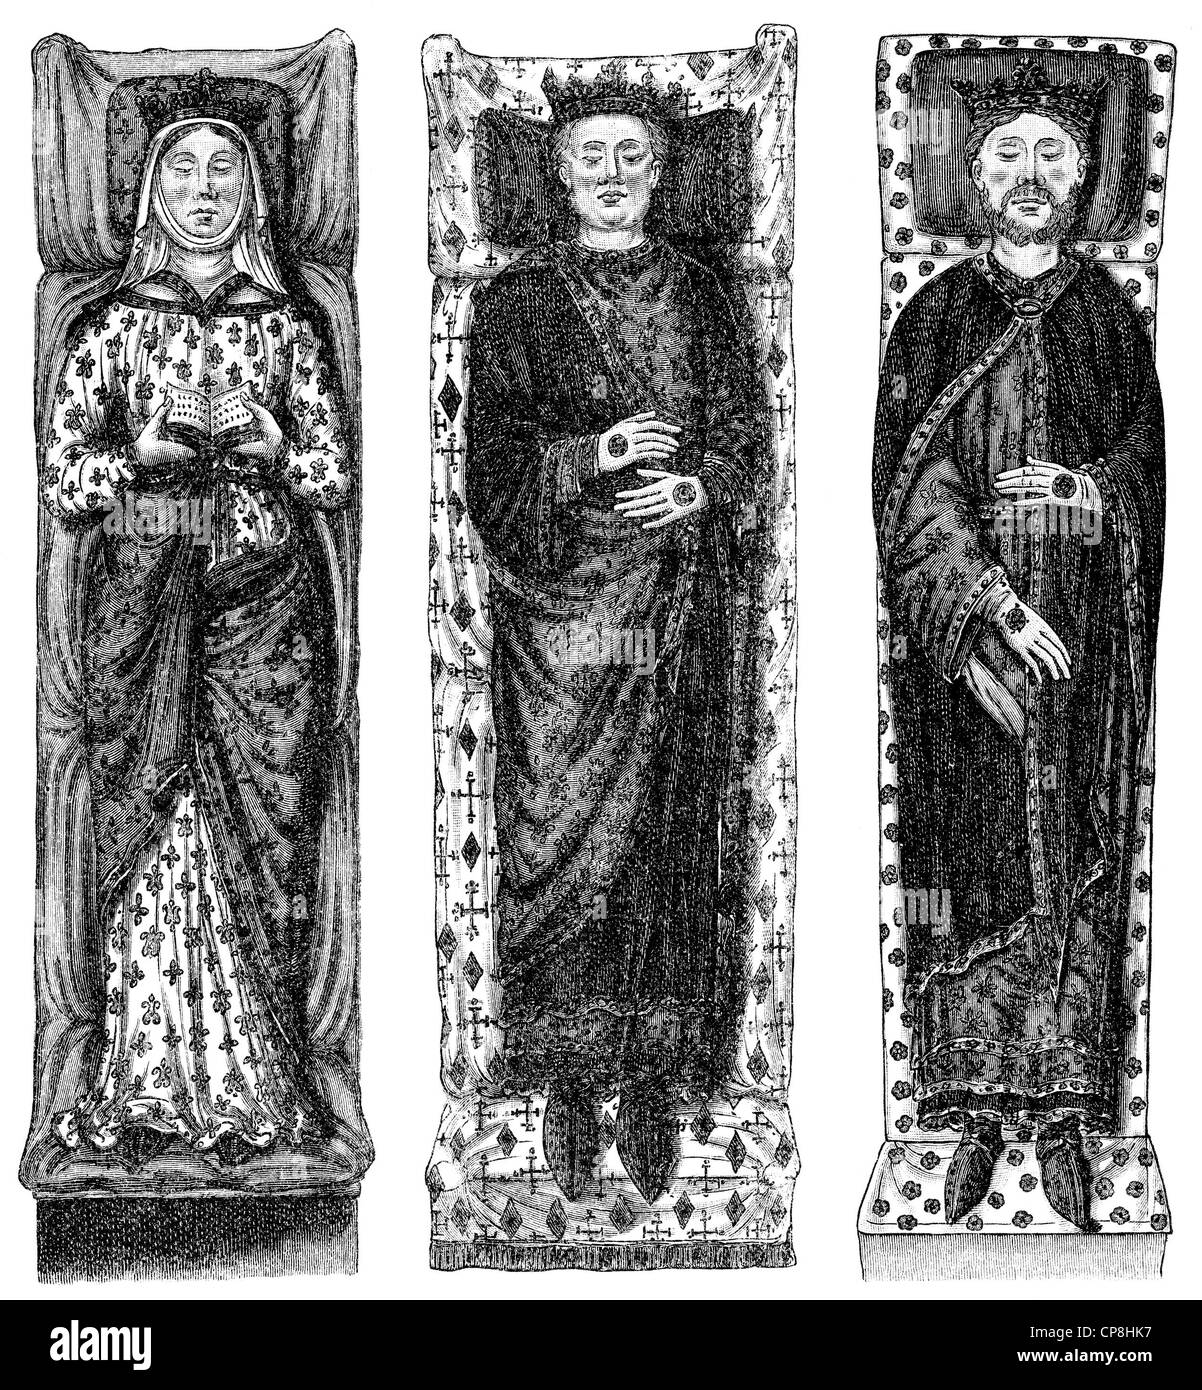 Tombe de sculptures, d'Aliénor d'Aquitaine, Henri II d'Angleterre et Richard Coeur de Lion, l'abbaye de Fontevraud, un monastère de Fontevra Banque D'Images